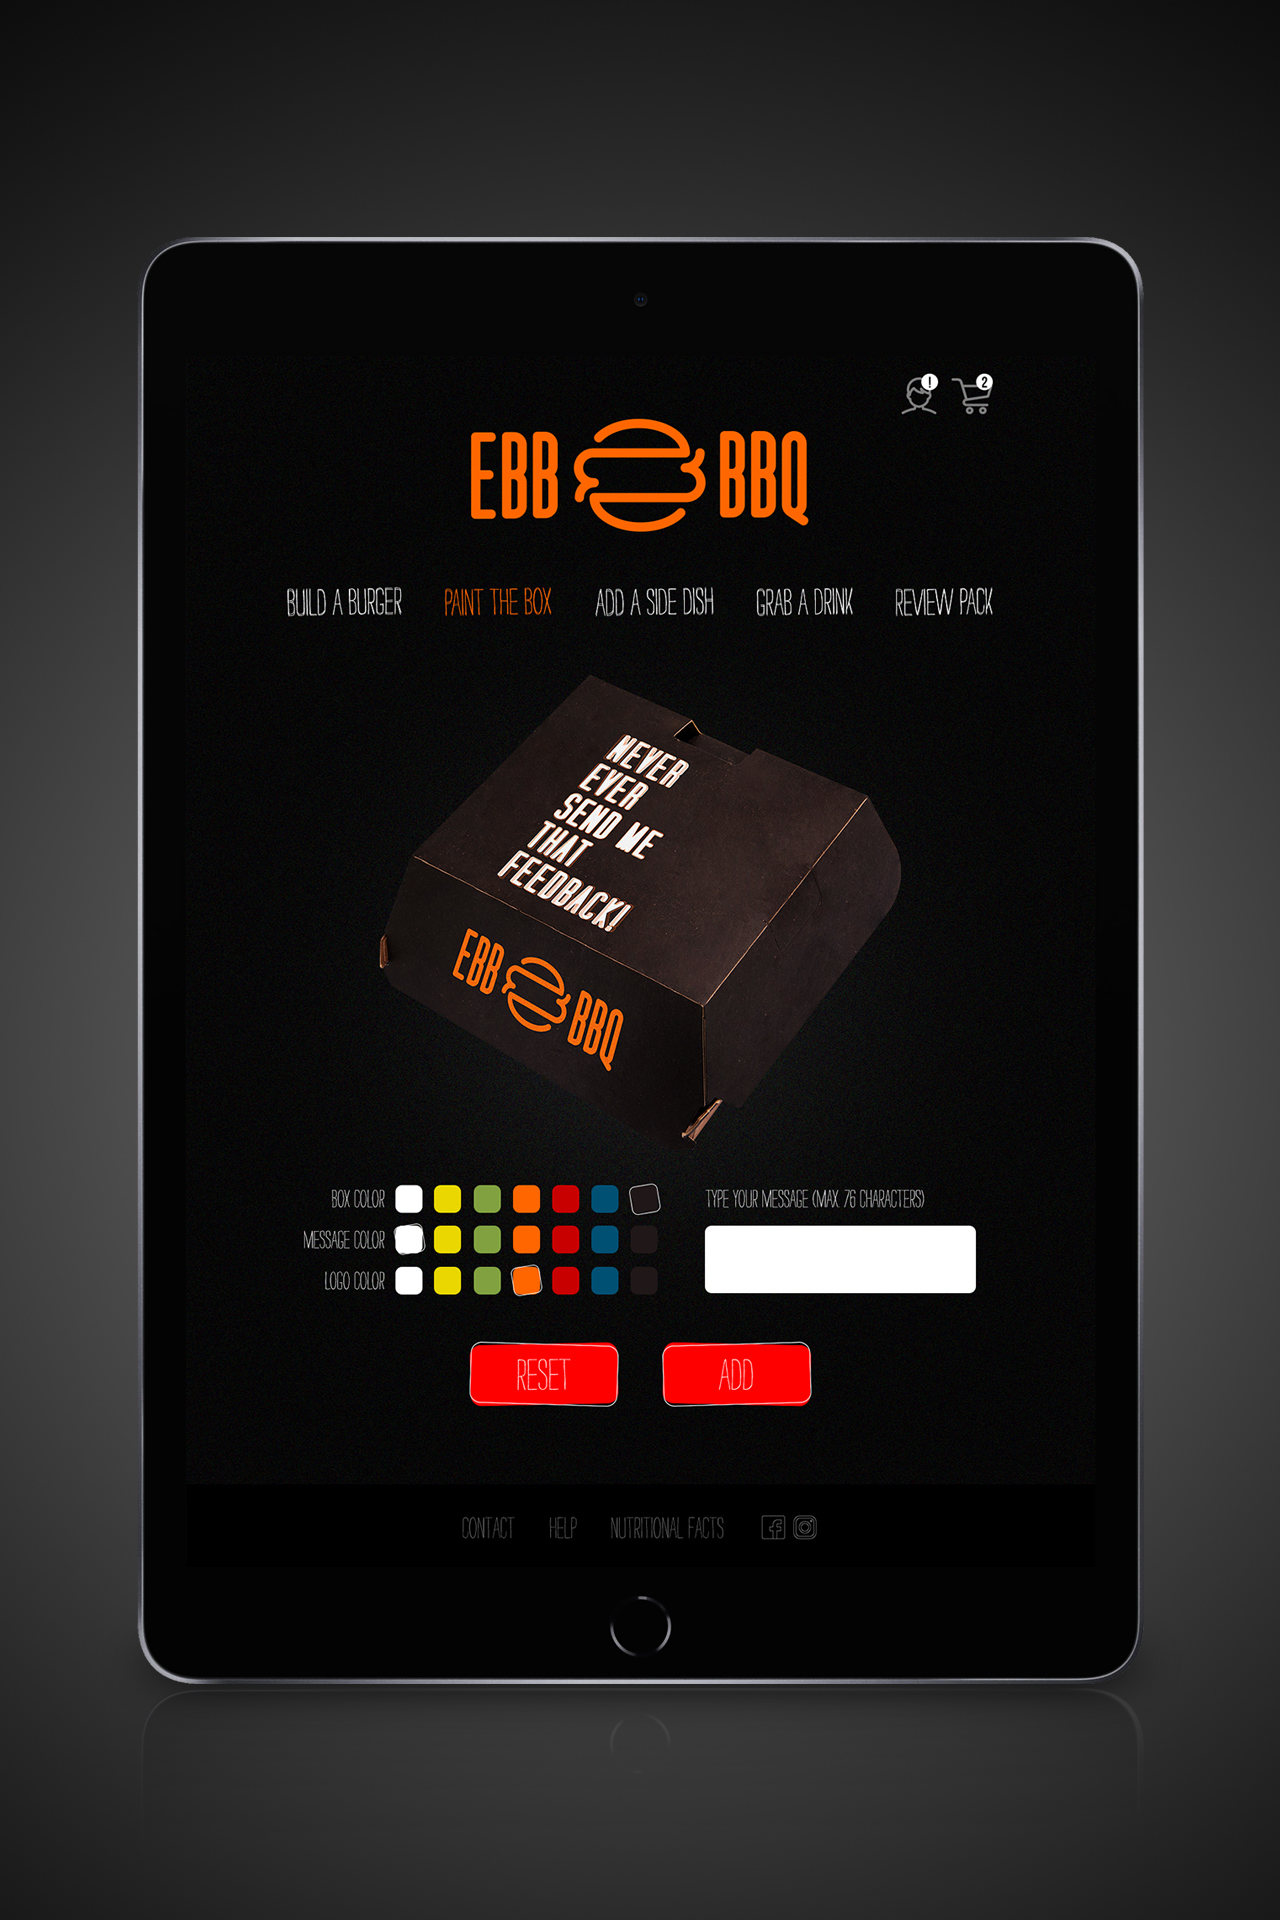 EBB_BBQ_App_MockUp_02